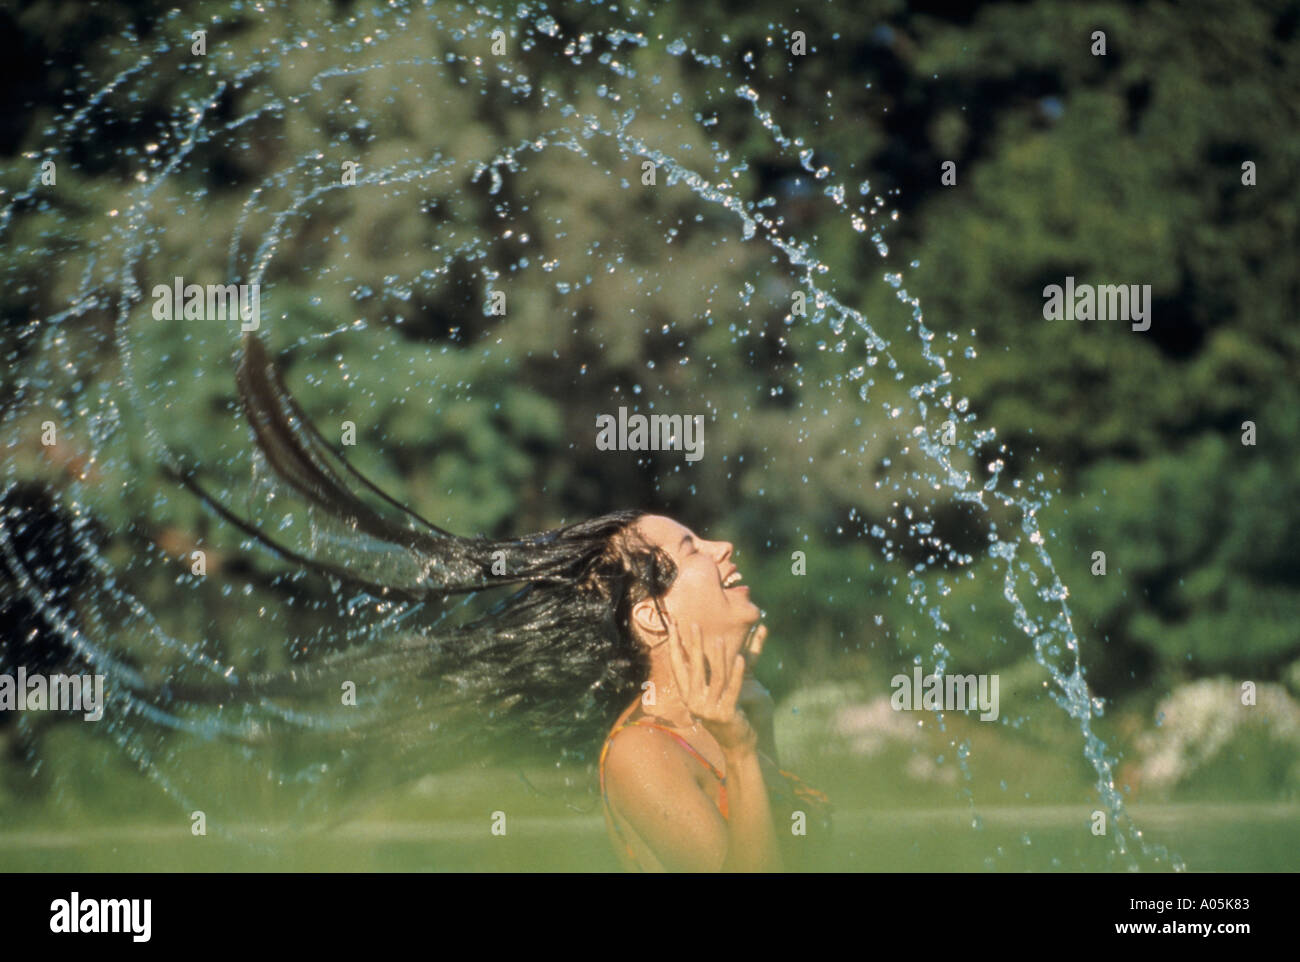 Frau ergibt sich aus dem Pool mit ihr nasses Haar Spritzwasser überall Stockfoto